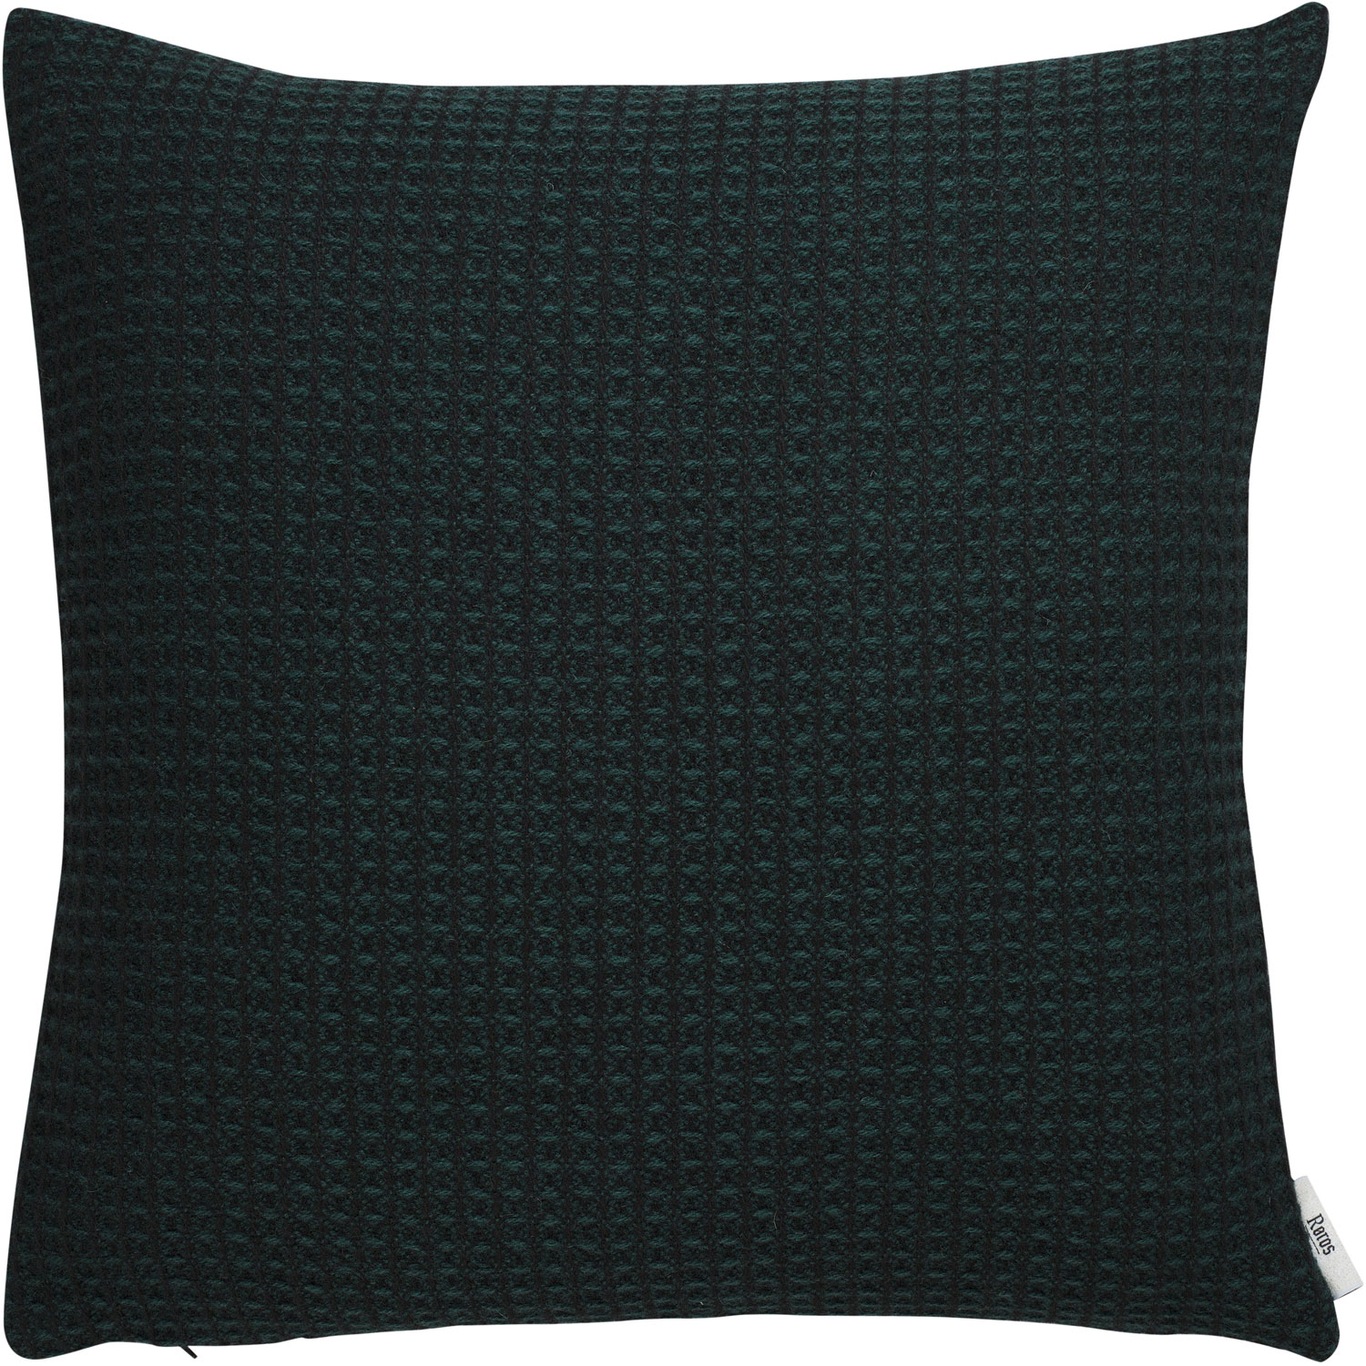 Vega Cushion 50x50 cm, Dark Green